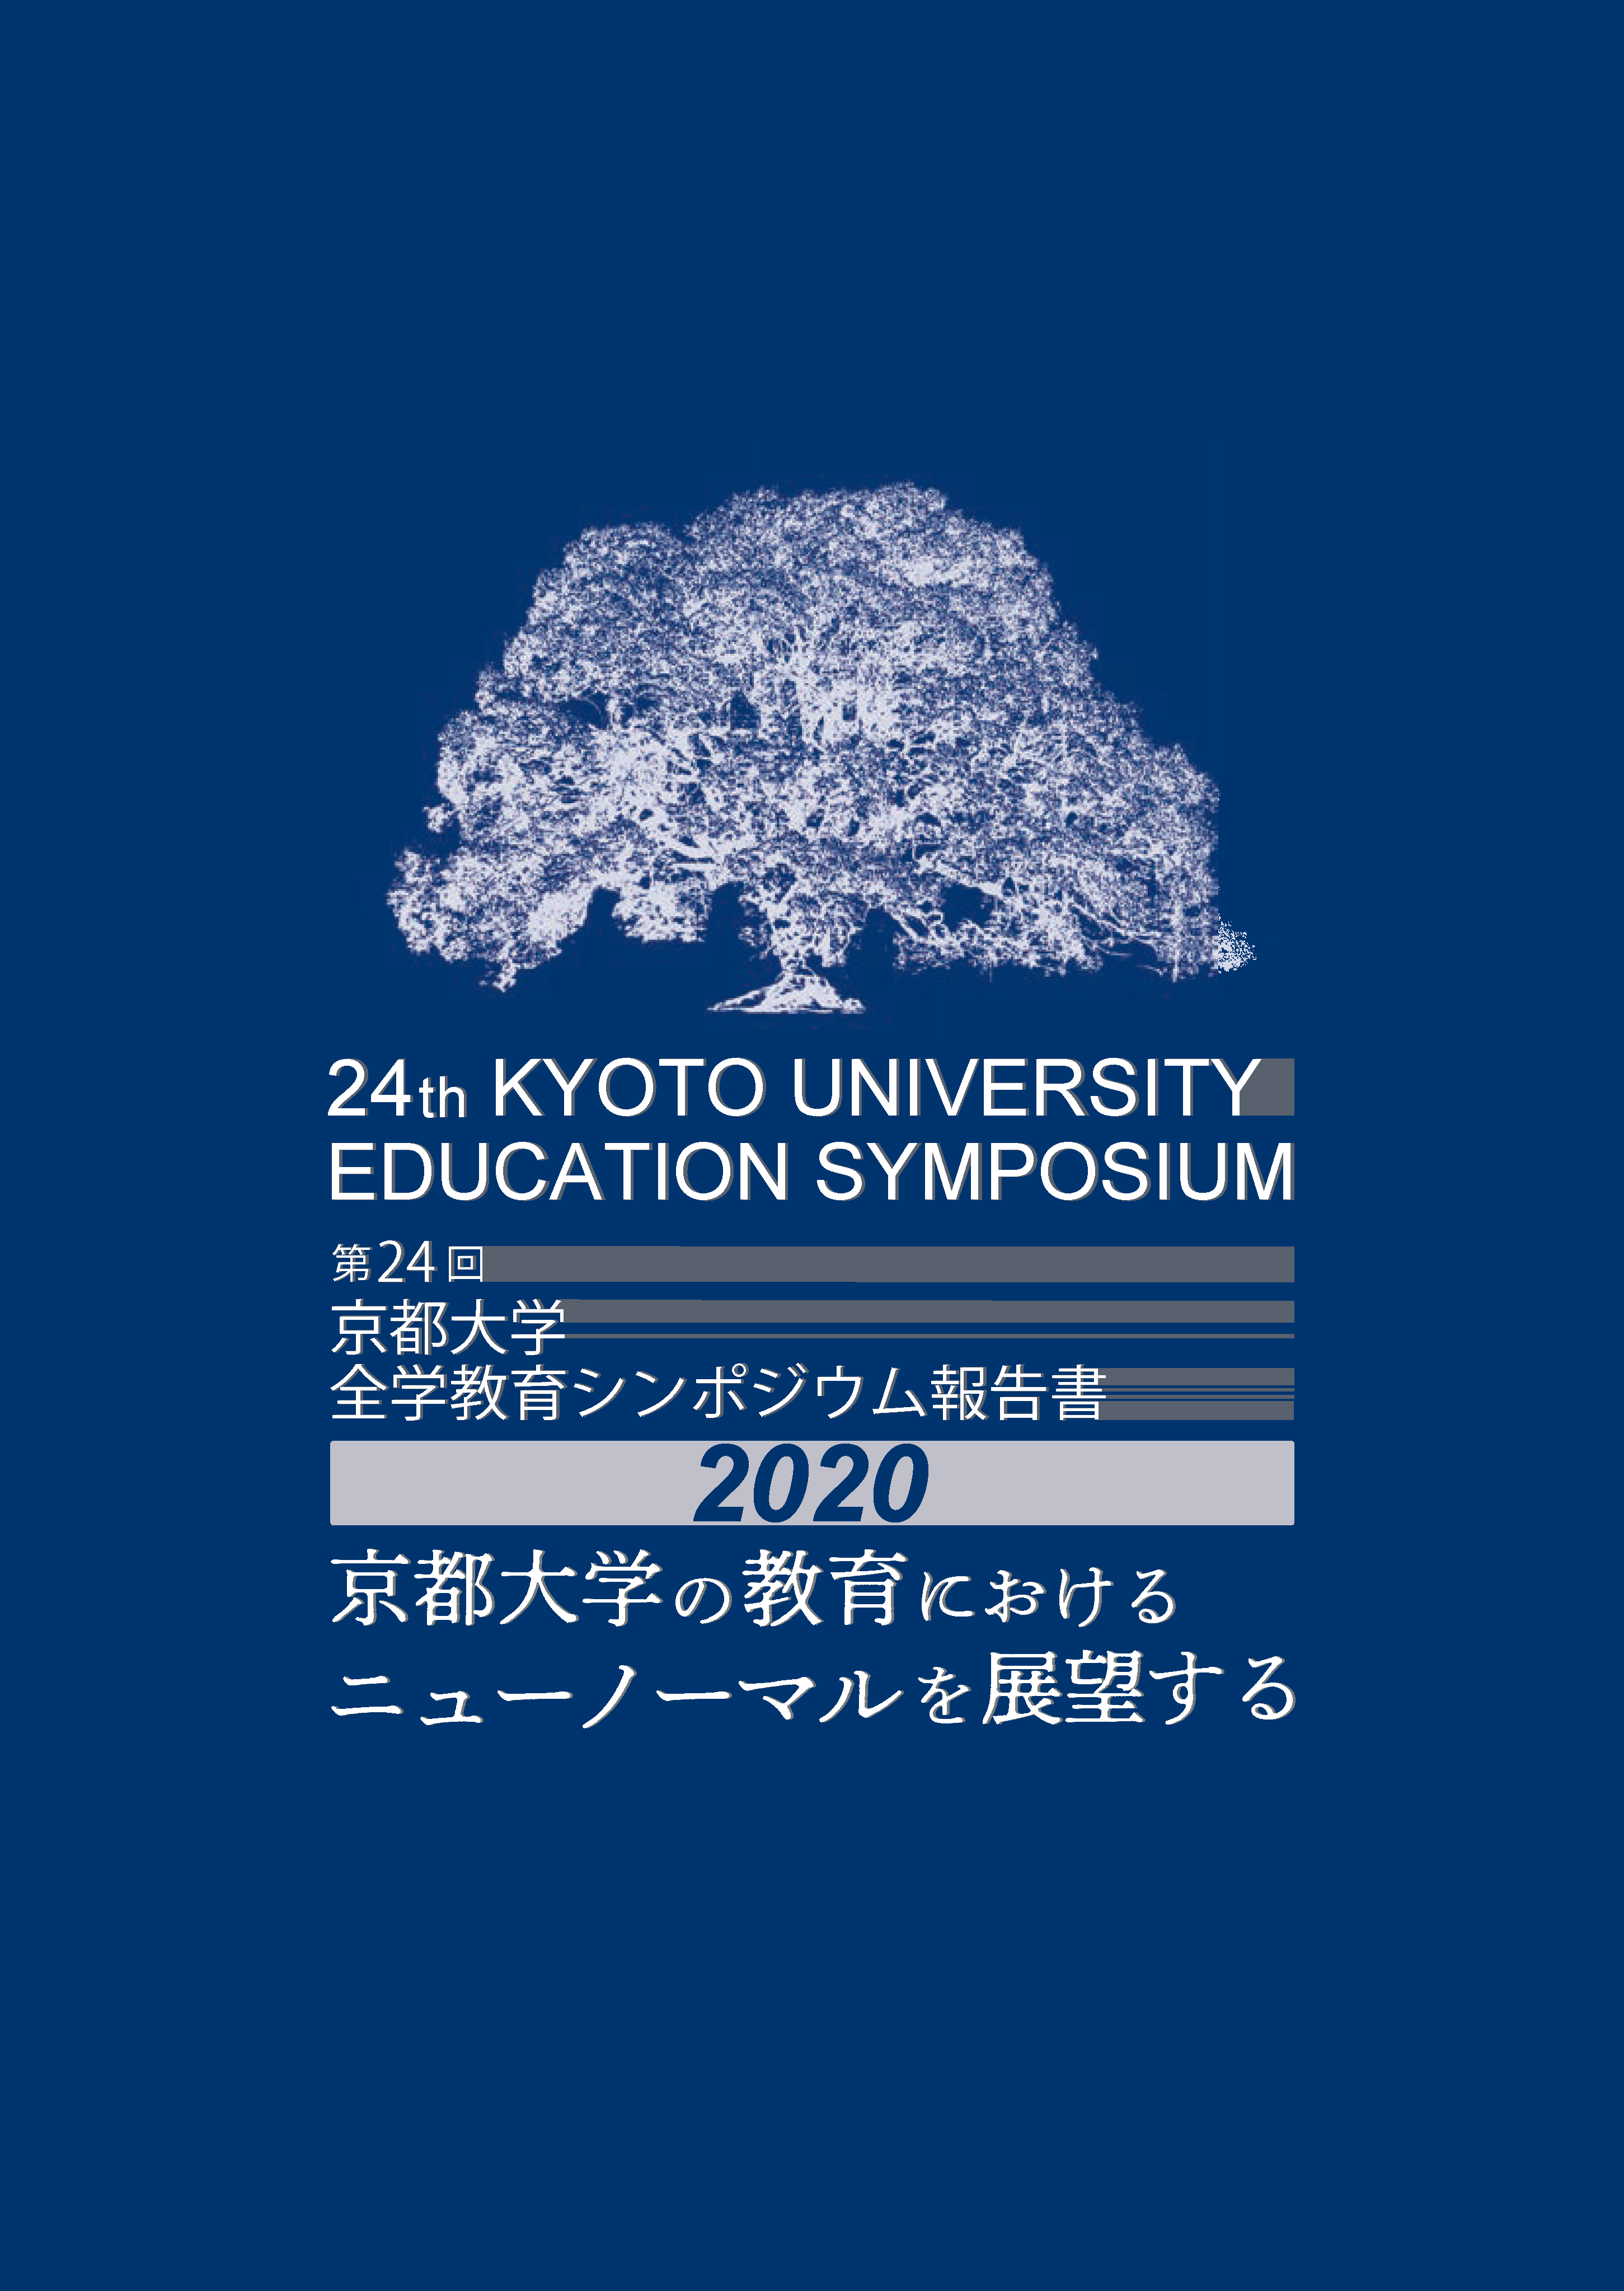 第24回京都大学全学教育シンポジウム報告書「京都大学の教育におけるニューノーマルを展望する」発行のお知らせ